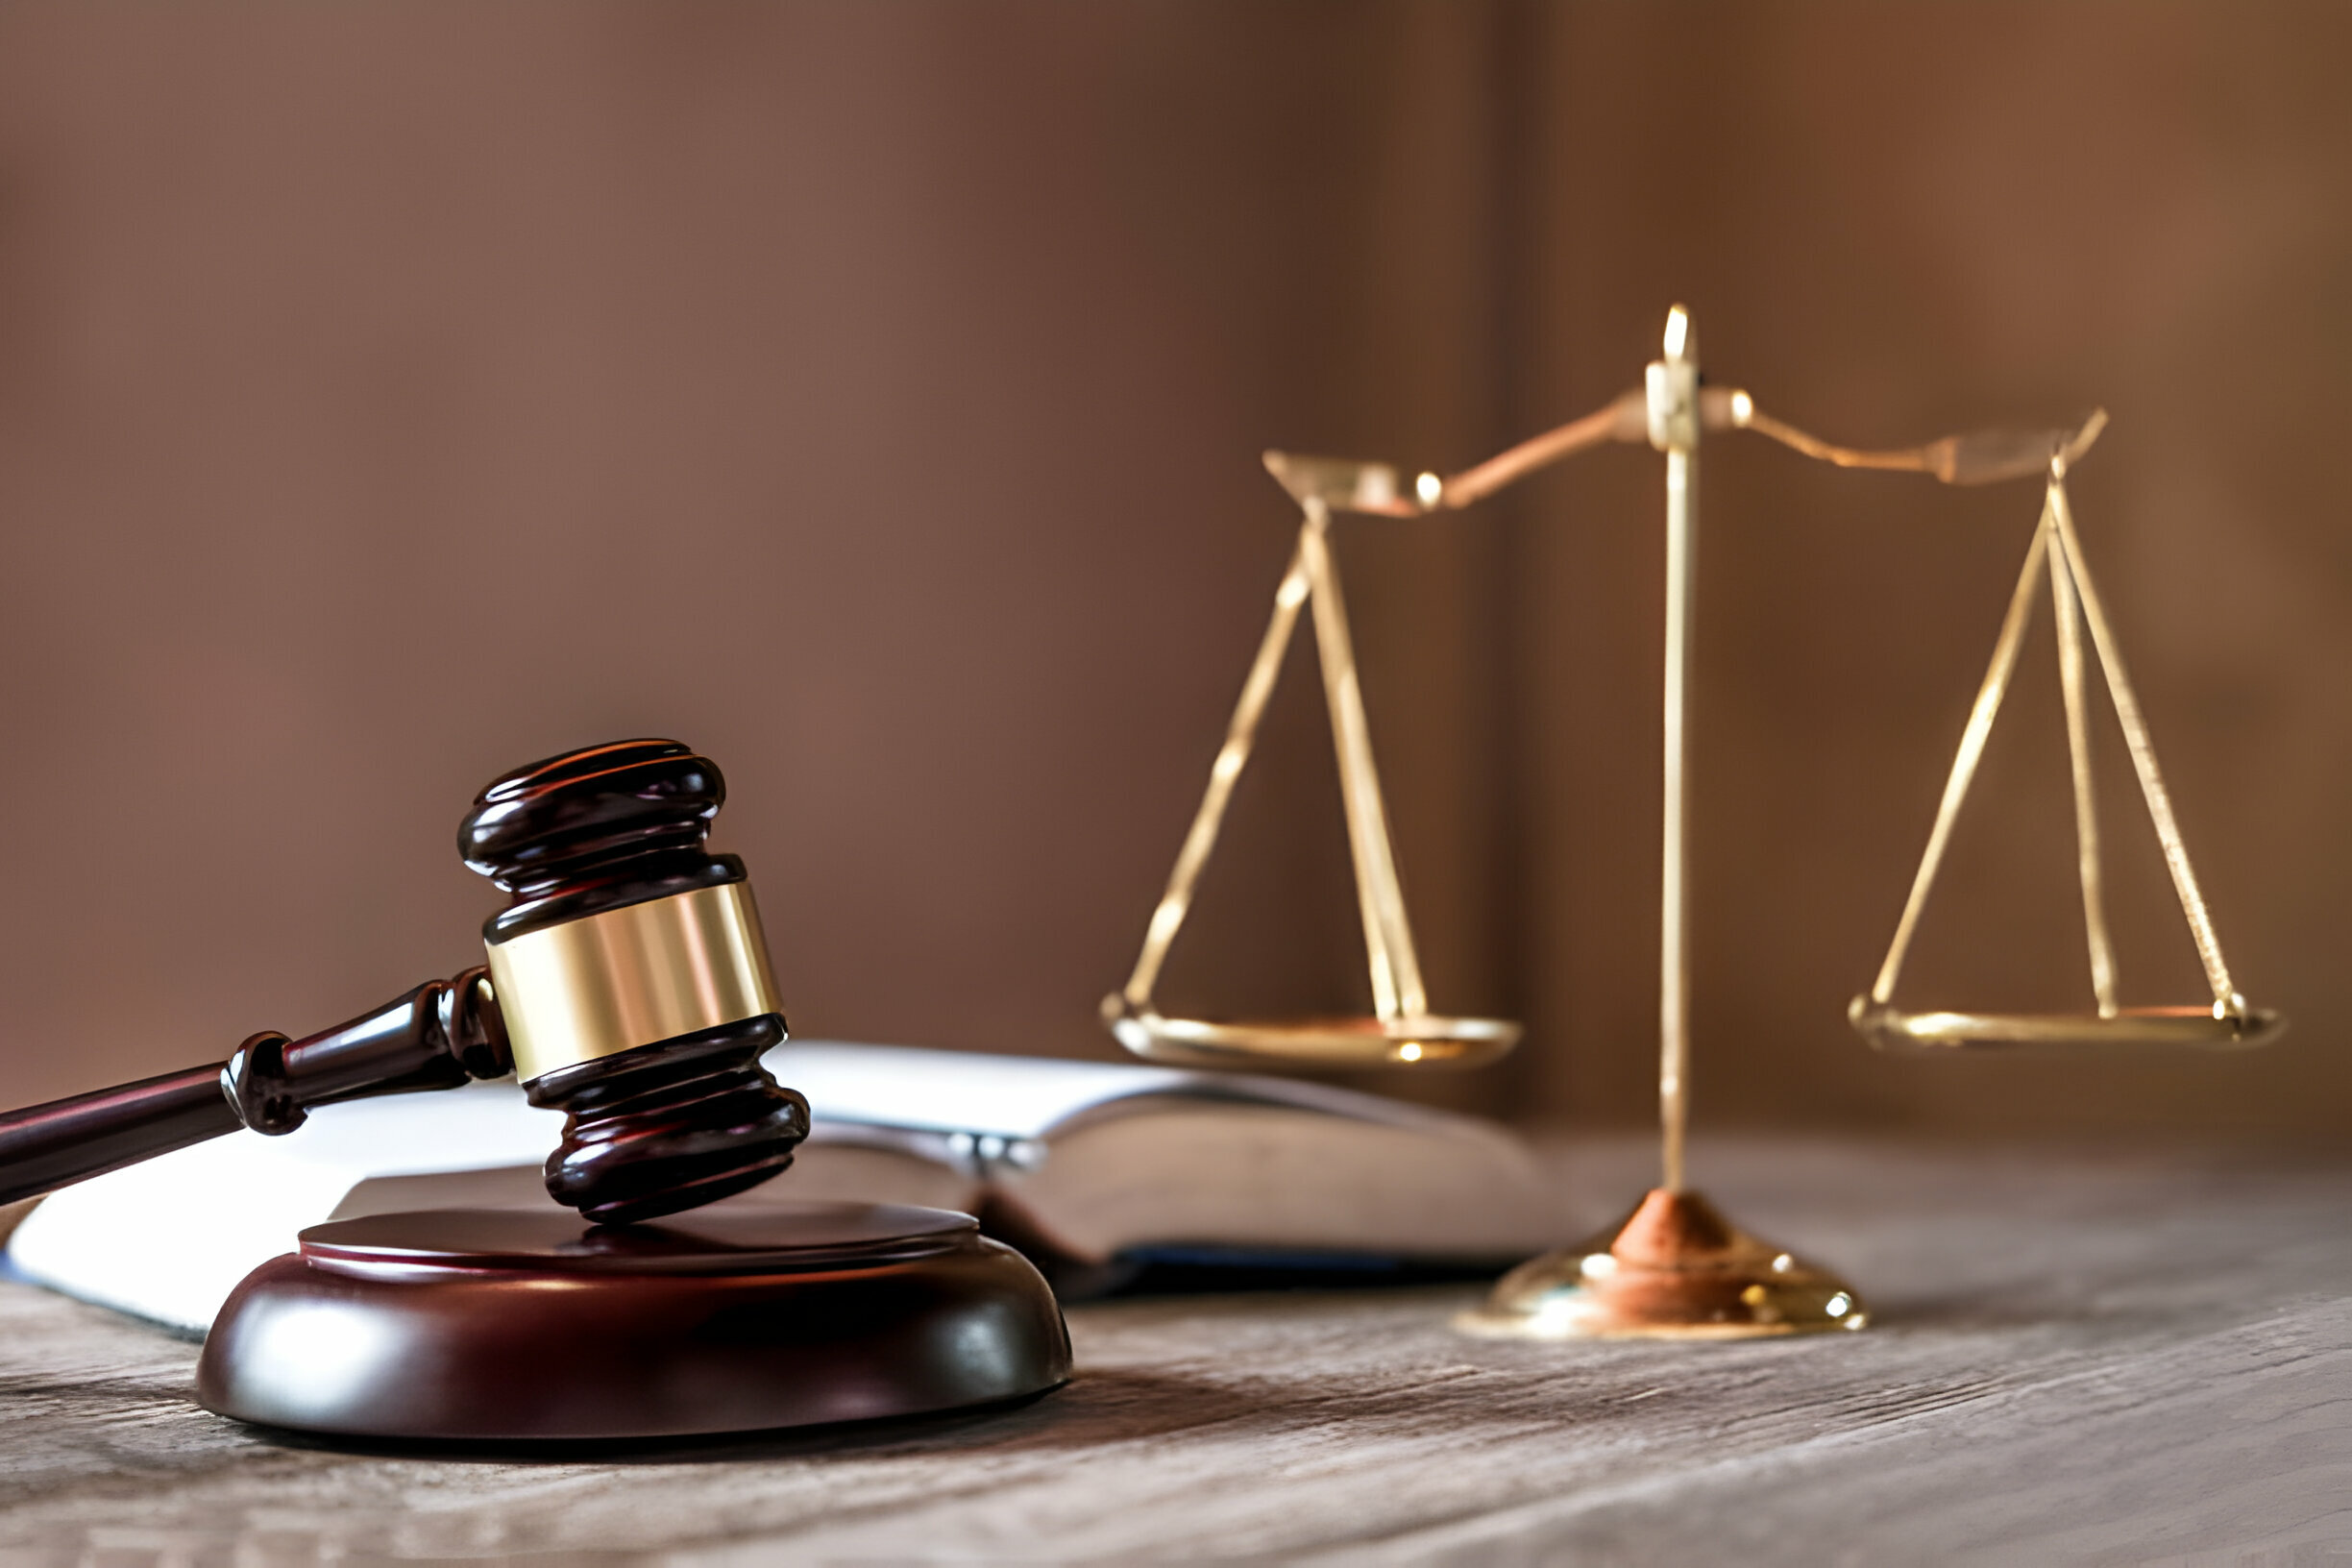  Litigation Law Services